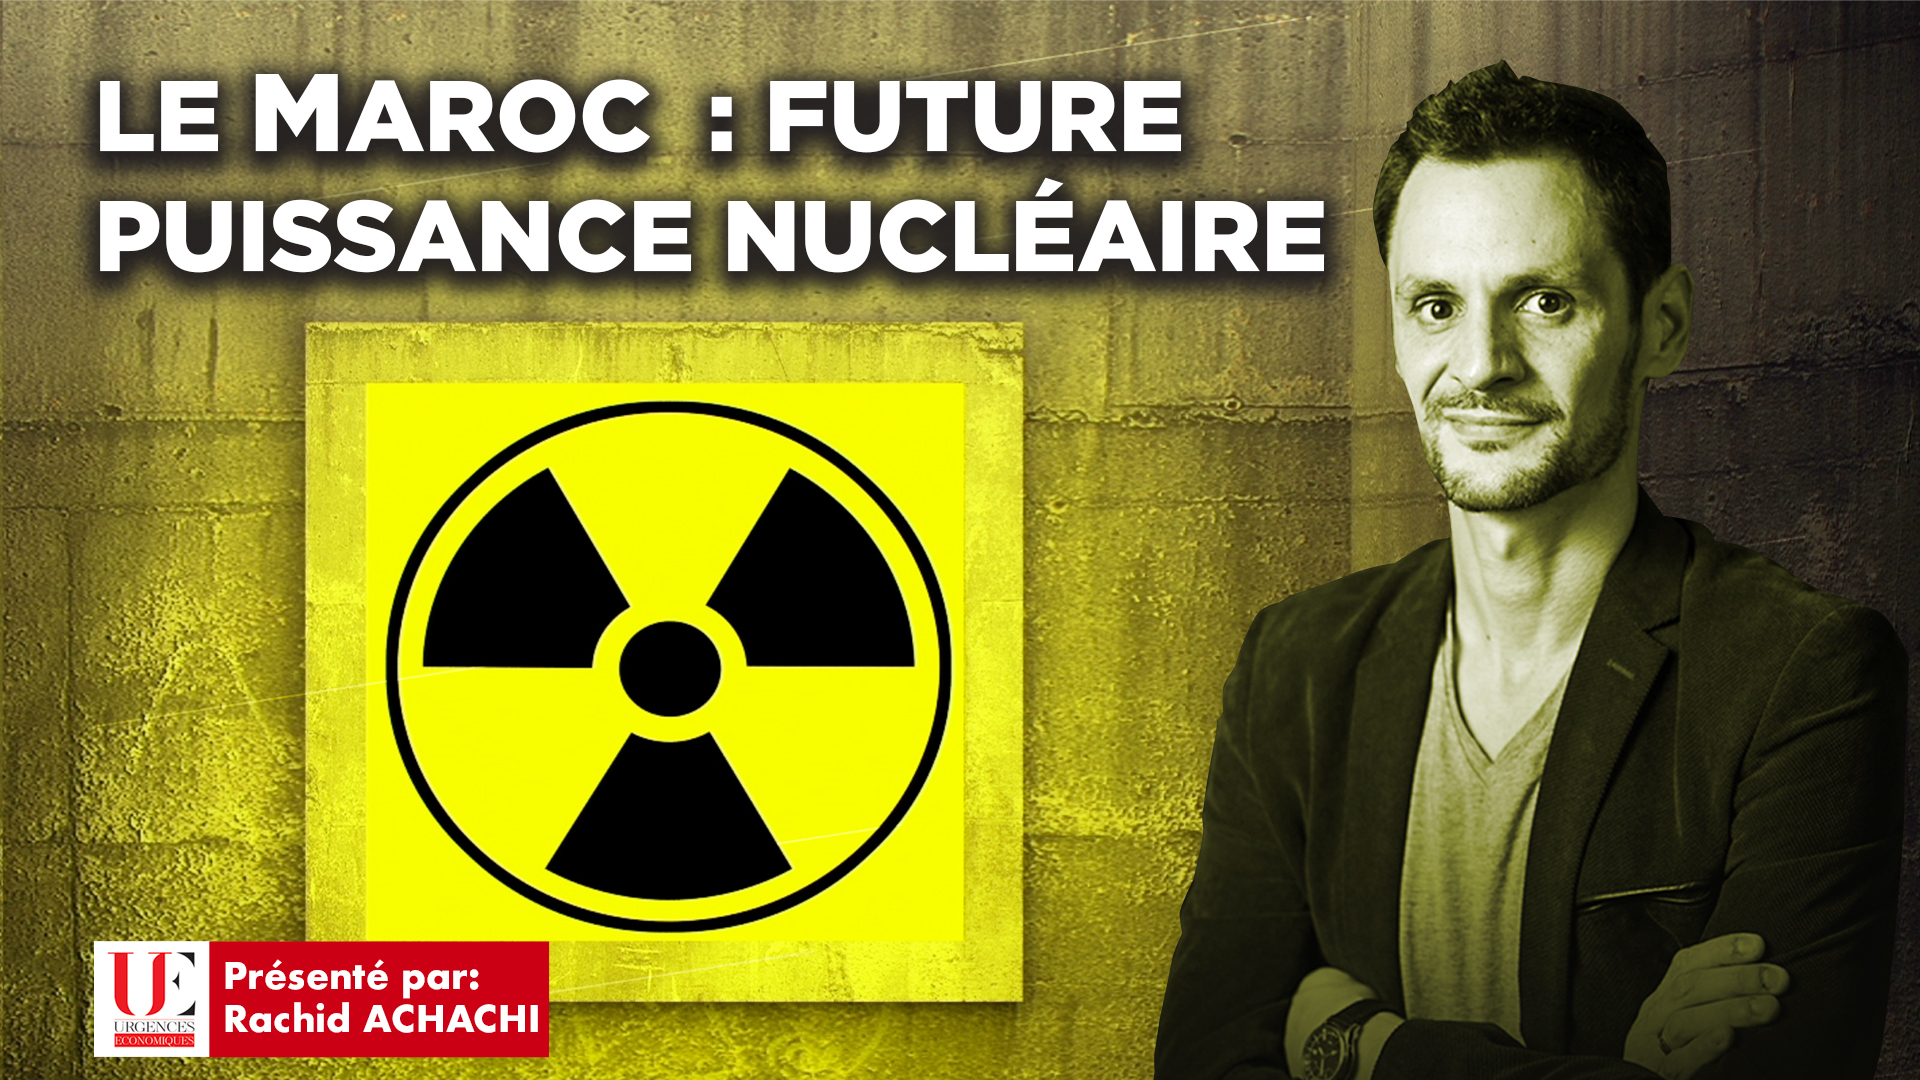 Le Maroc: Future puissance nucléaire